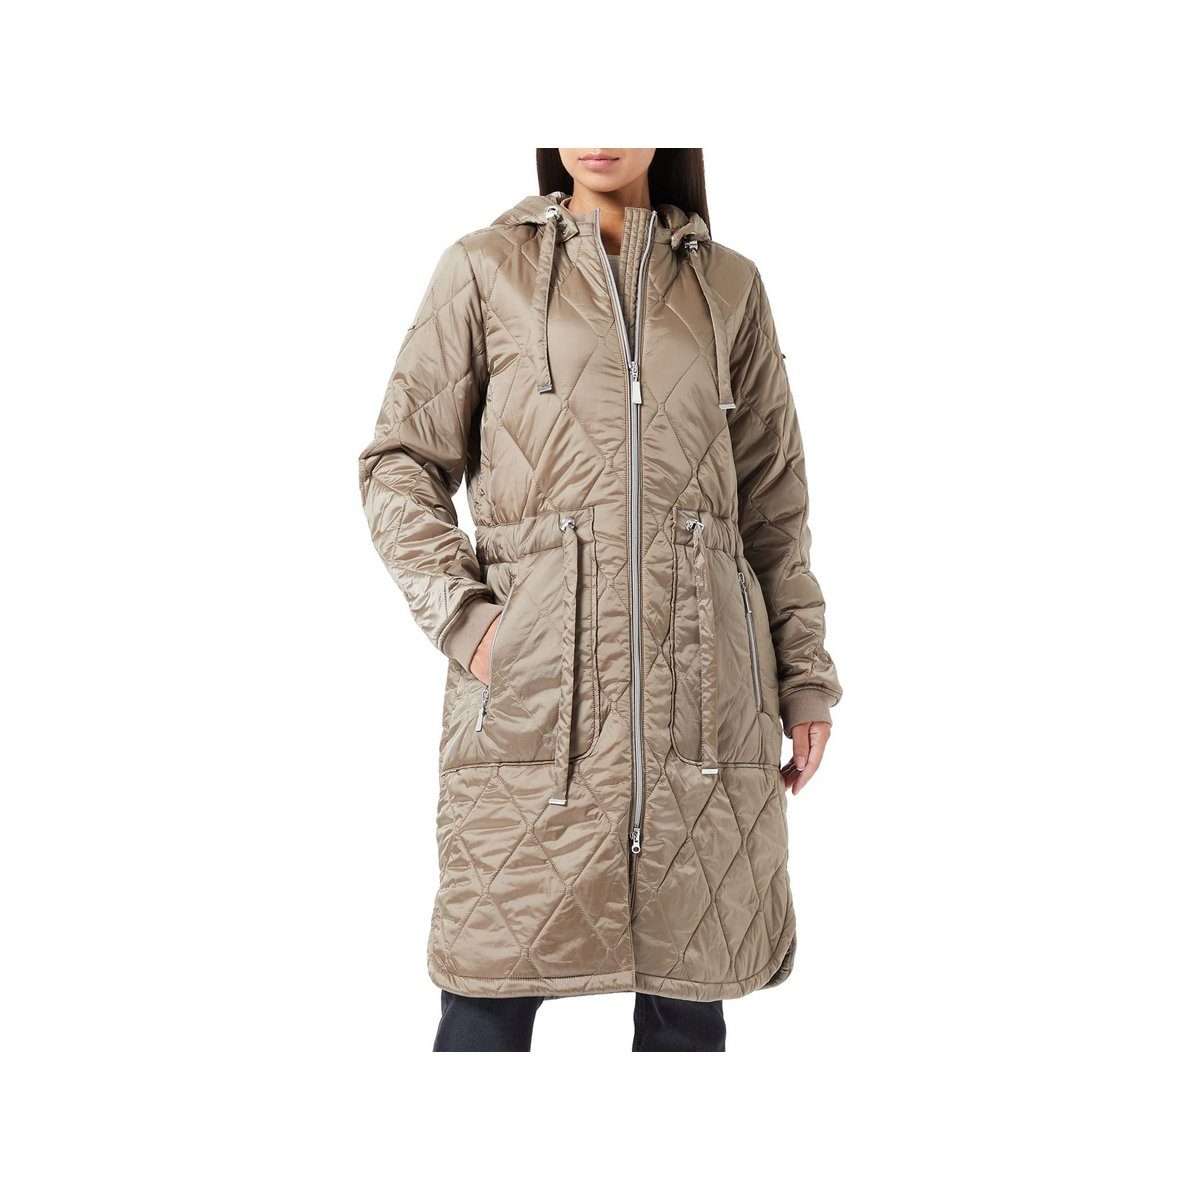 Длинное пальто серо-коричневого цвета стандартного кроя (1 шт.)